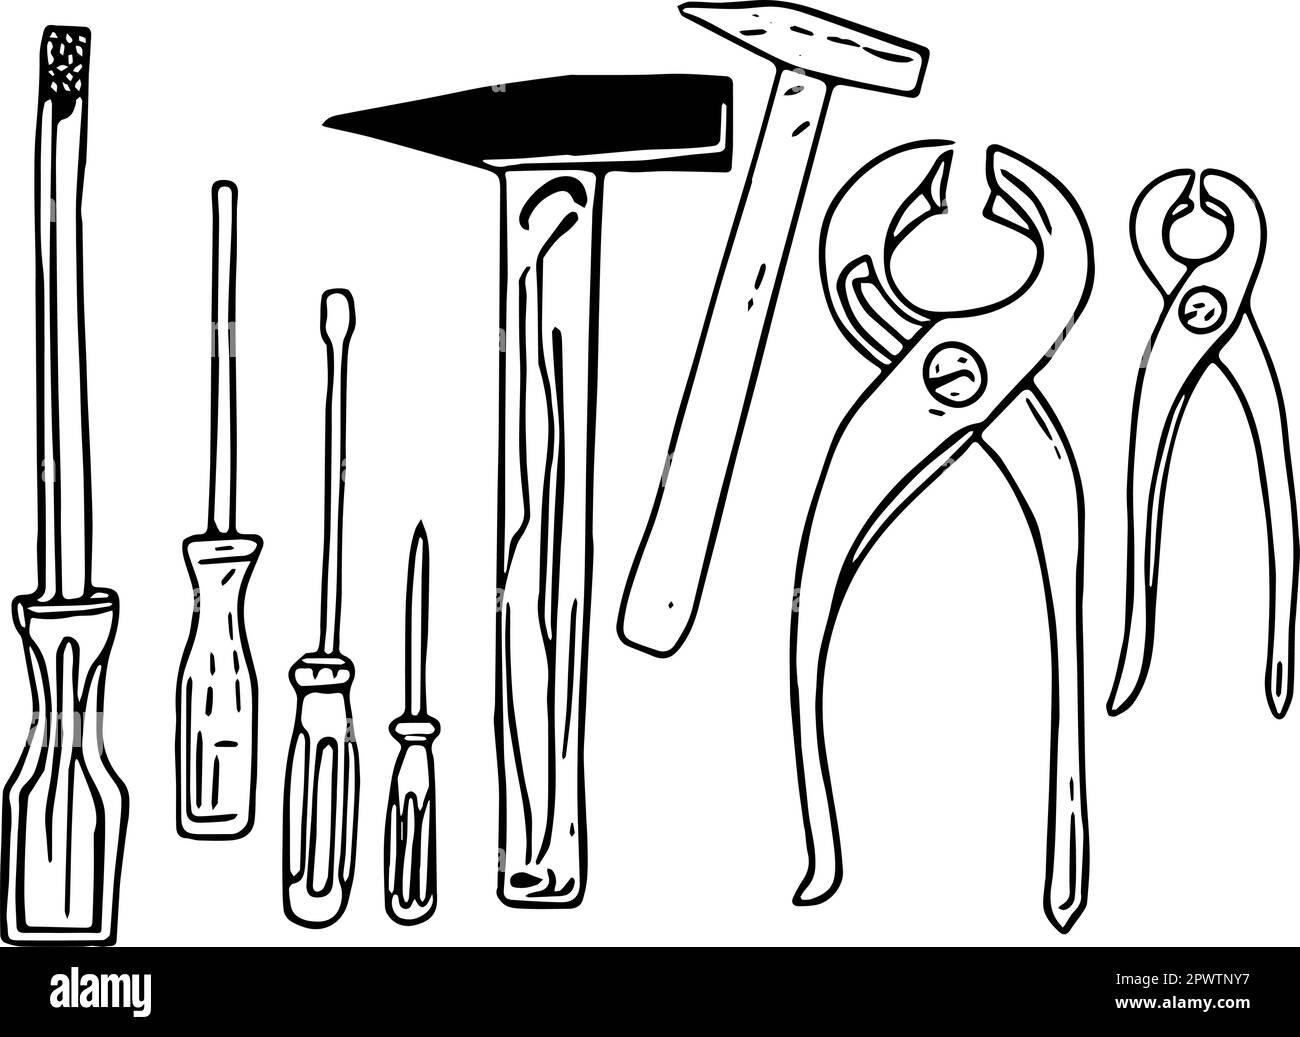 Werkzeuge für das Handwerk. Ein Satz mit Schraubendreher, Zange und Hammer. Konturen werden als Vektor vor transparentem Hintergrund gezeichnet. Stock Vektor